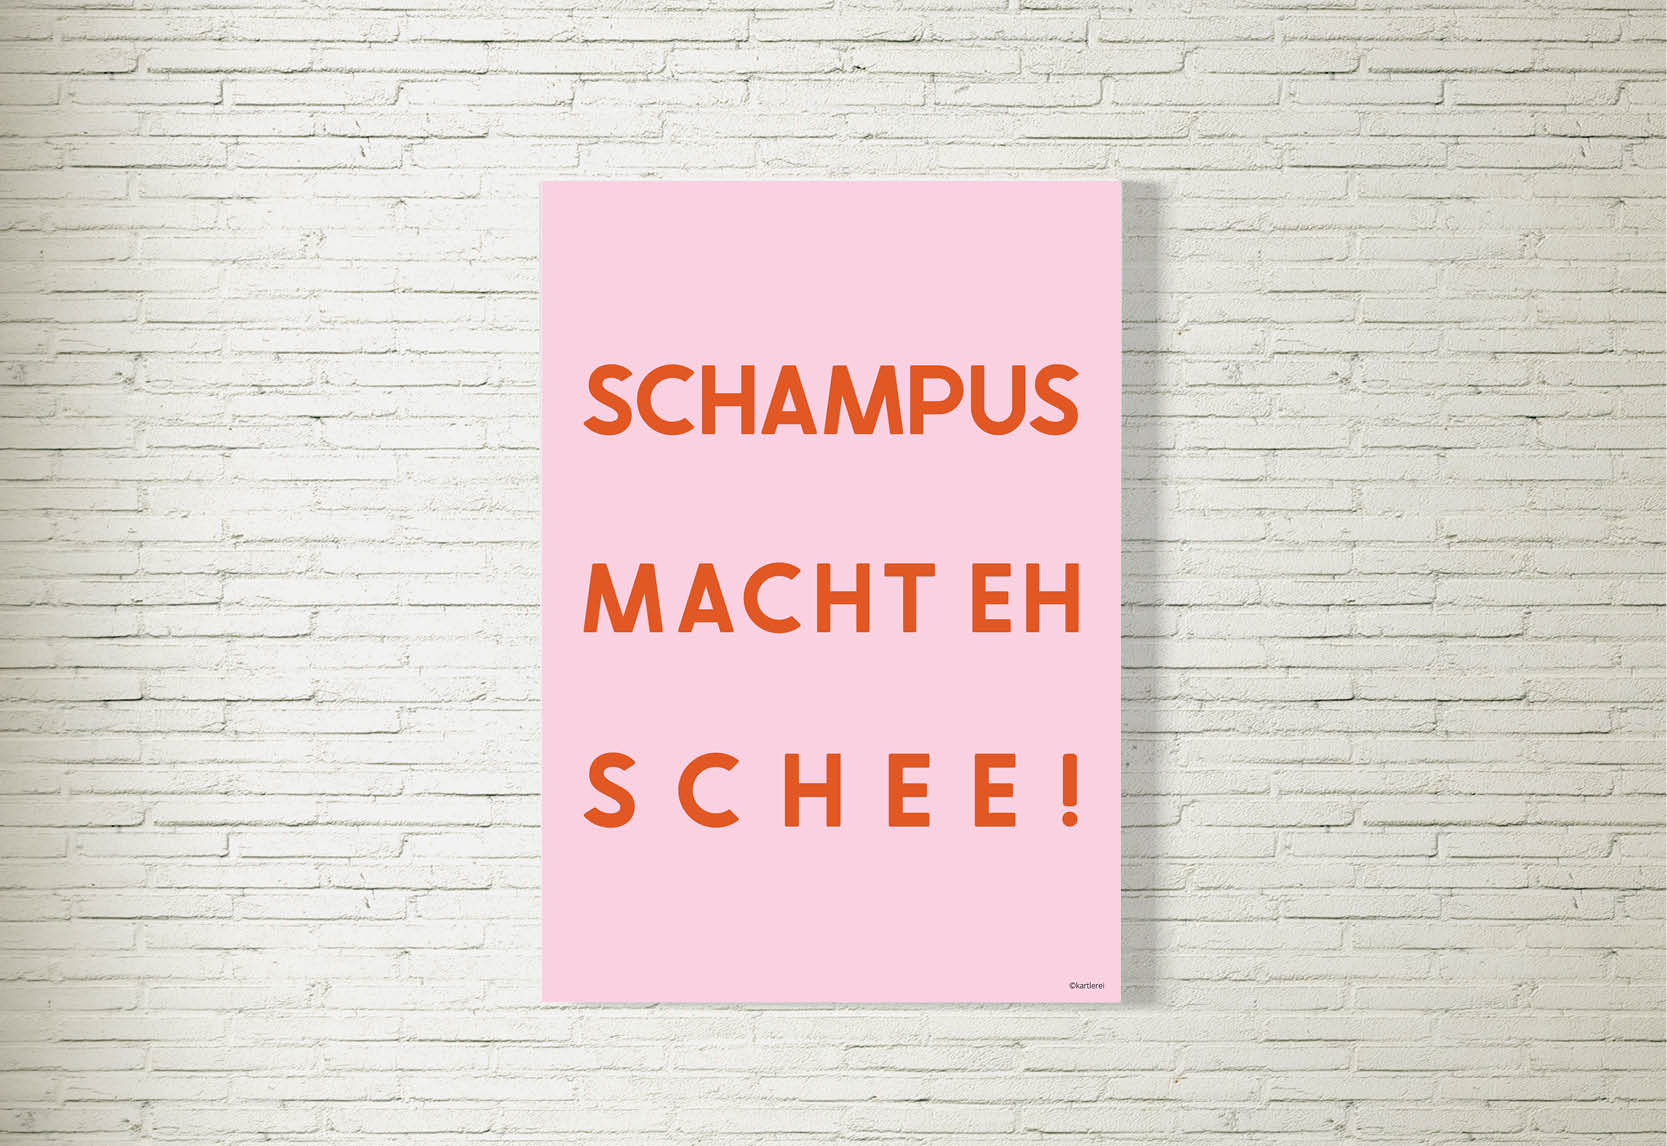 kartlerei poster shop bayrische poster spruch statement typo bilder bayern pop art12 - Poster/Bild Schampus macht eh schee! rosa/orange